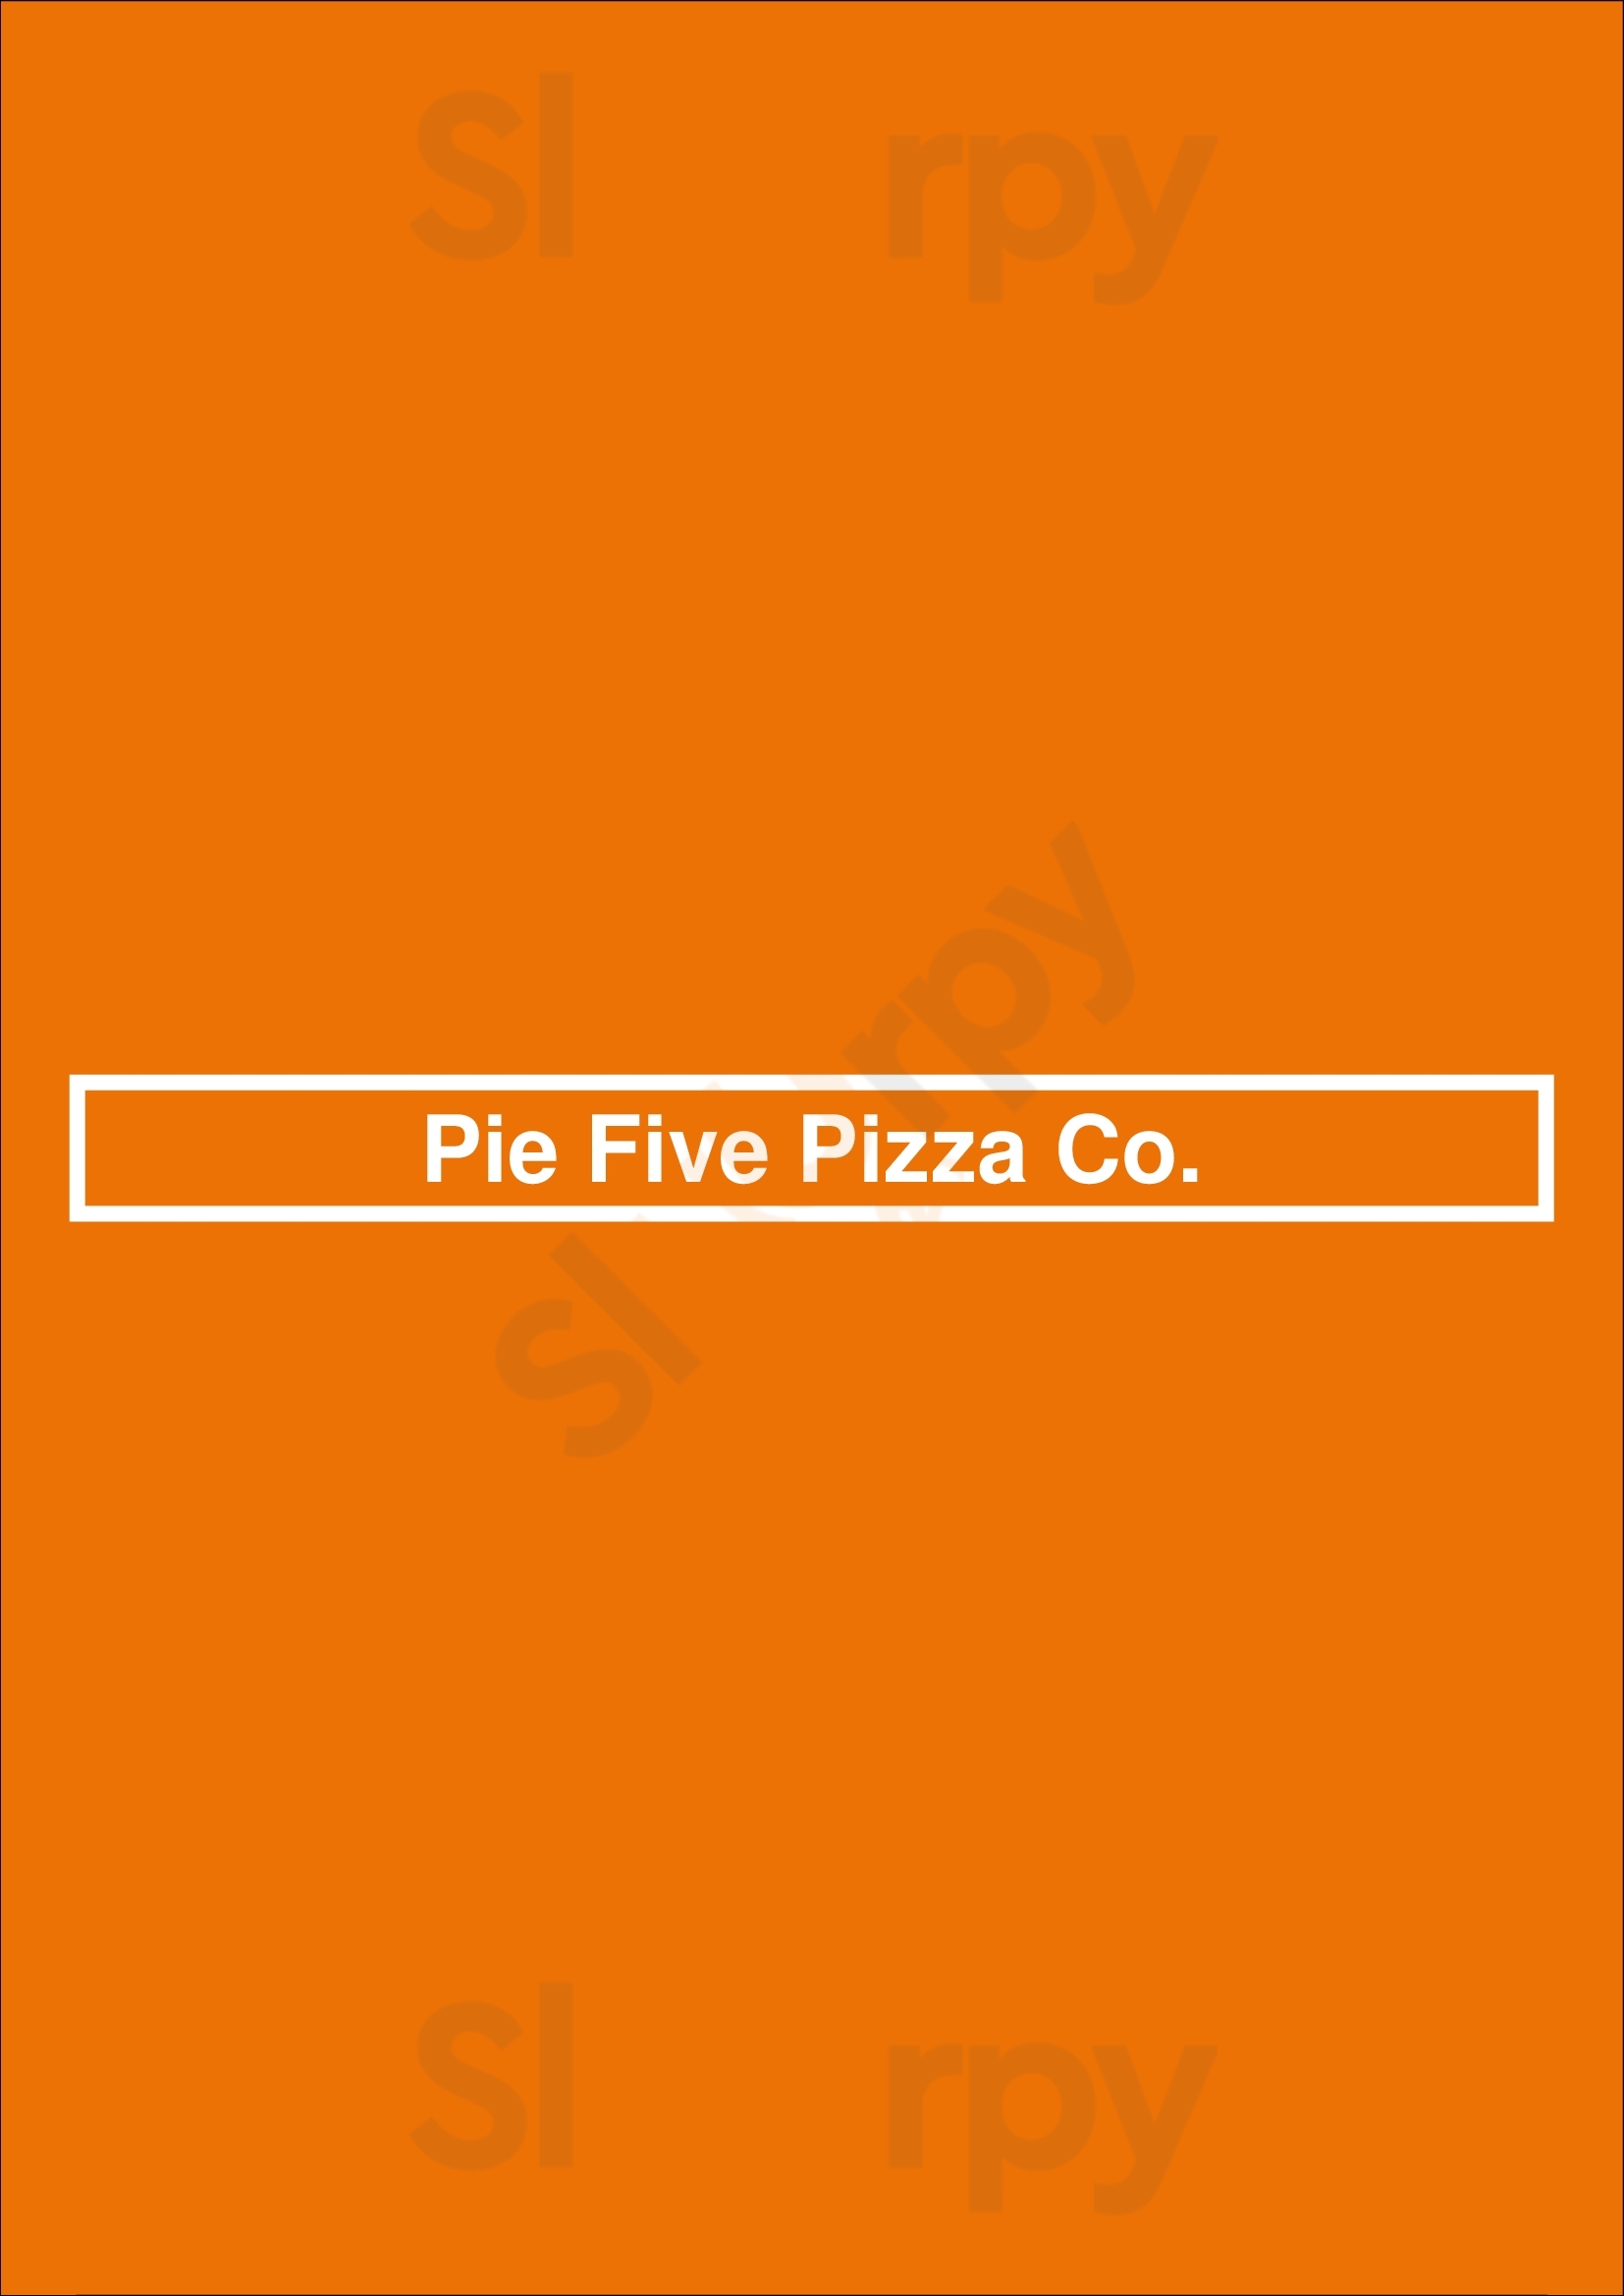 Pie Five Pizza Co. Dallas Menu - 1